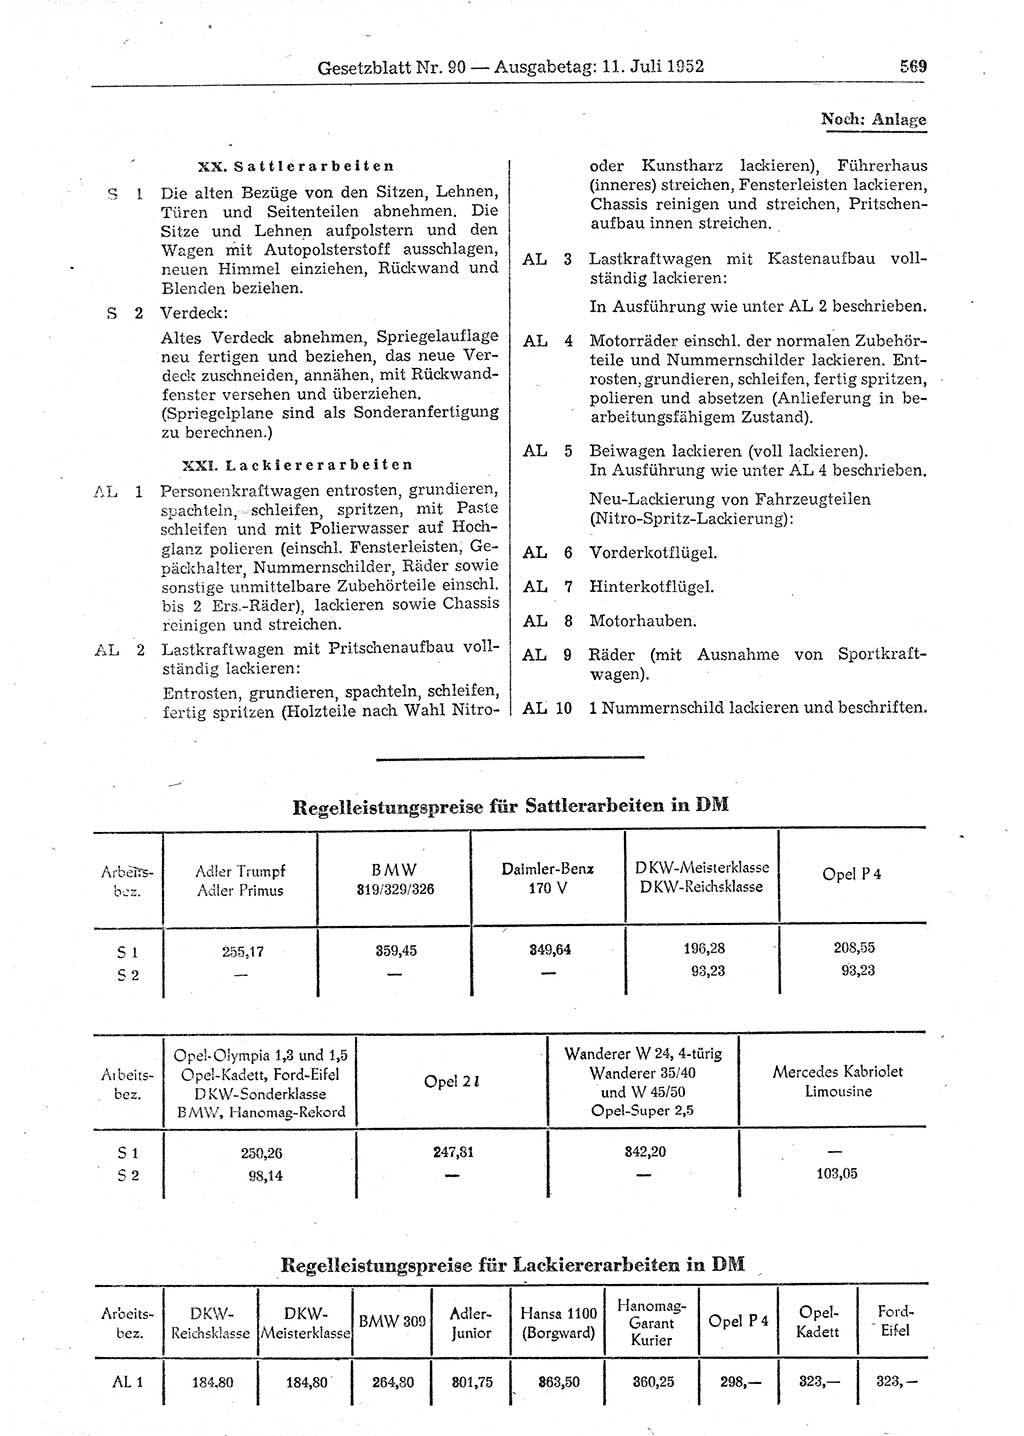 Gesetzblatt (GBl.) der Deutschen Demokratischen Republik (DDR) 1952, Seite 569 (GBl. DDR 1952, S. 569)